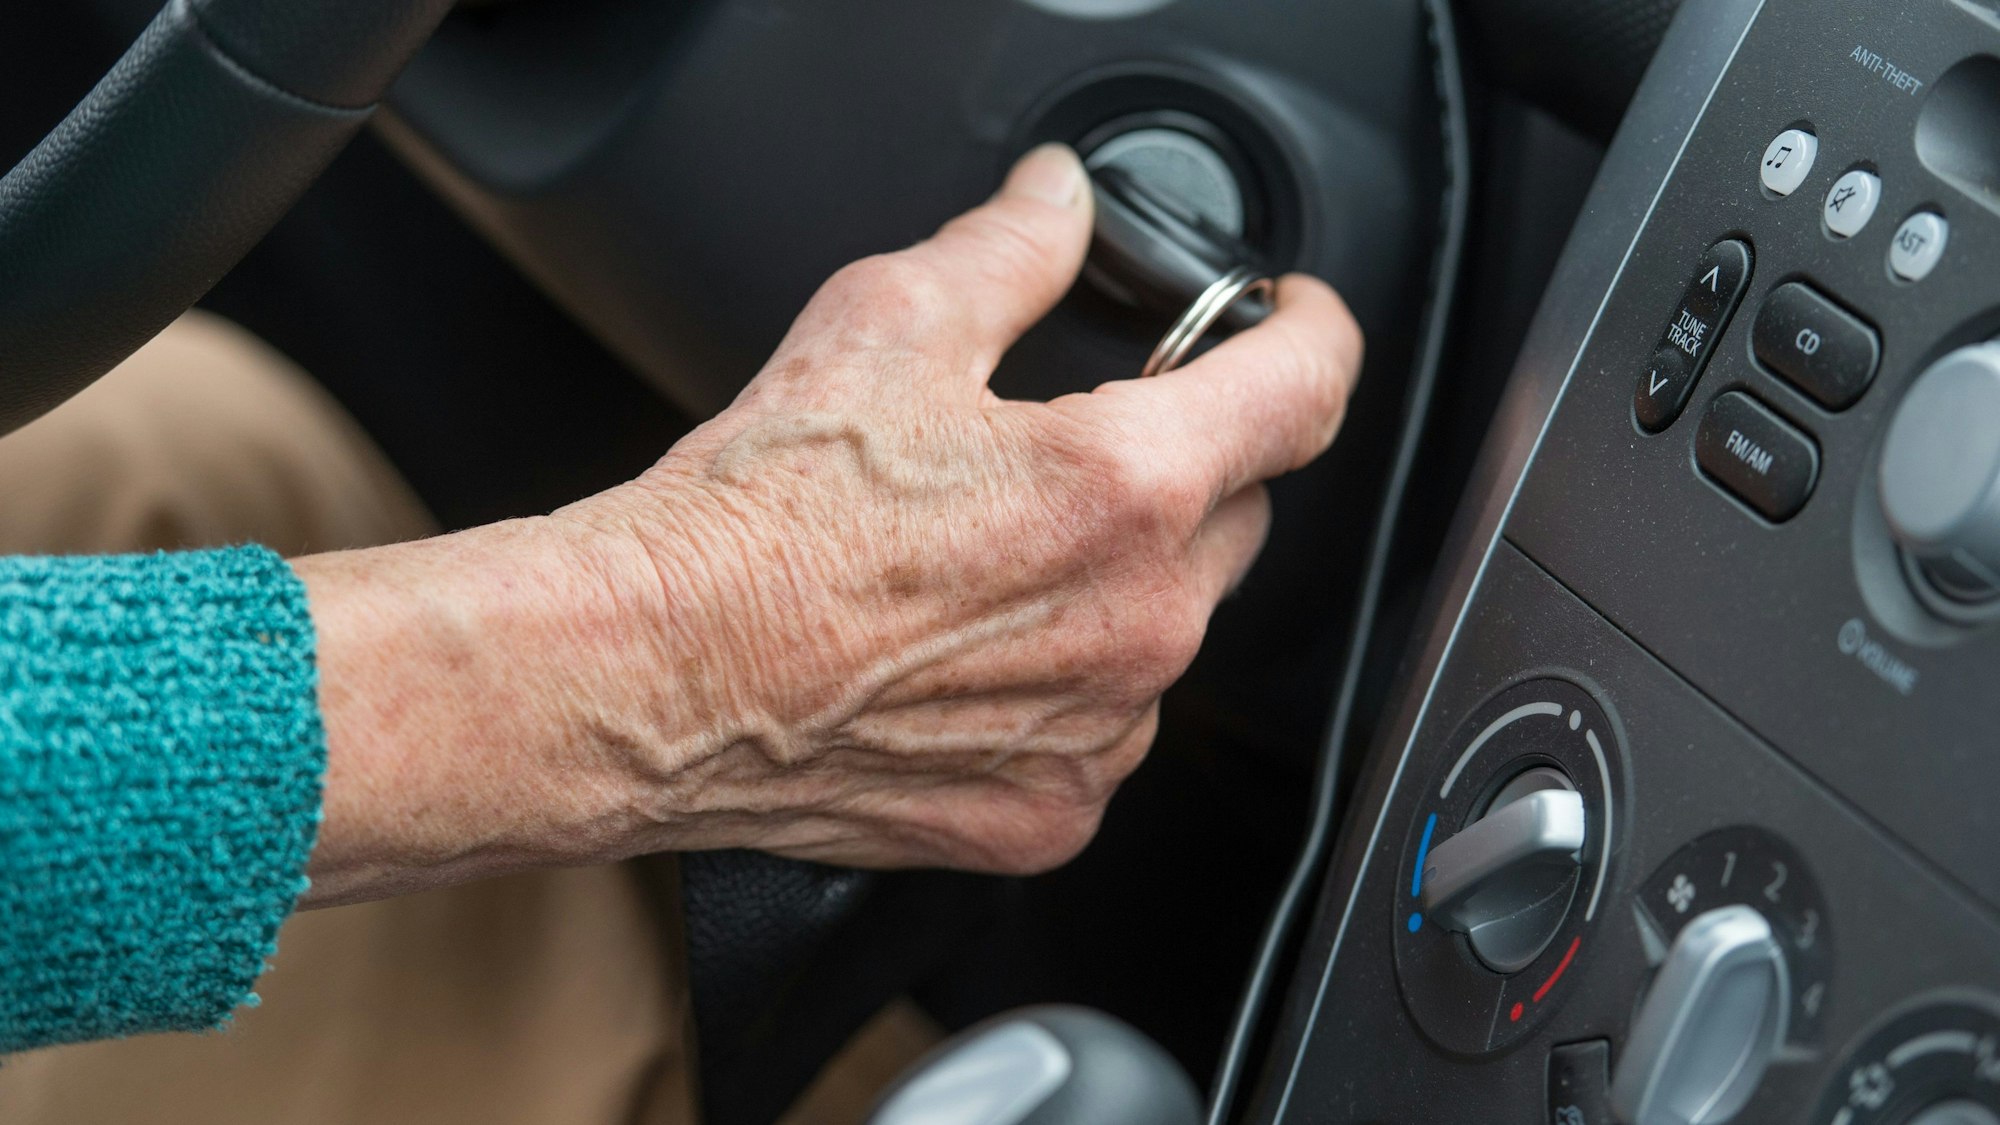 Eine Rentnerin startet mit dem Zündschlüssel ihr Auto.